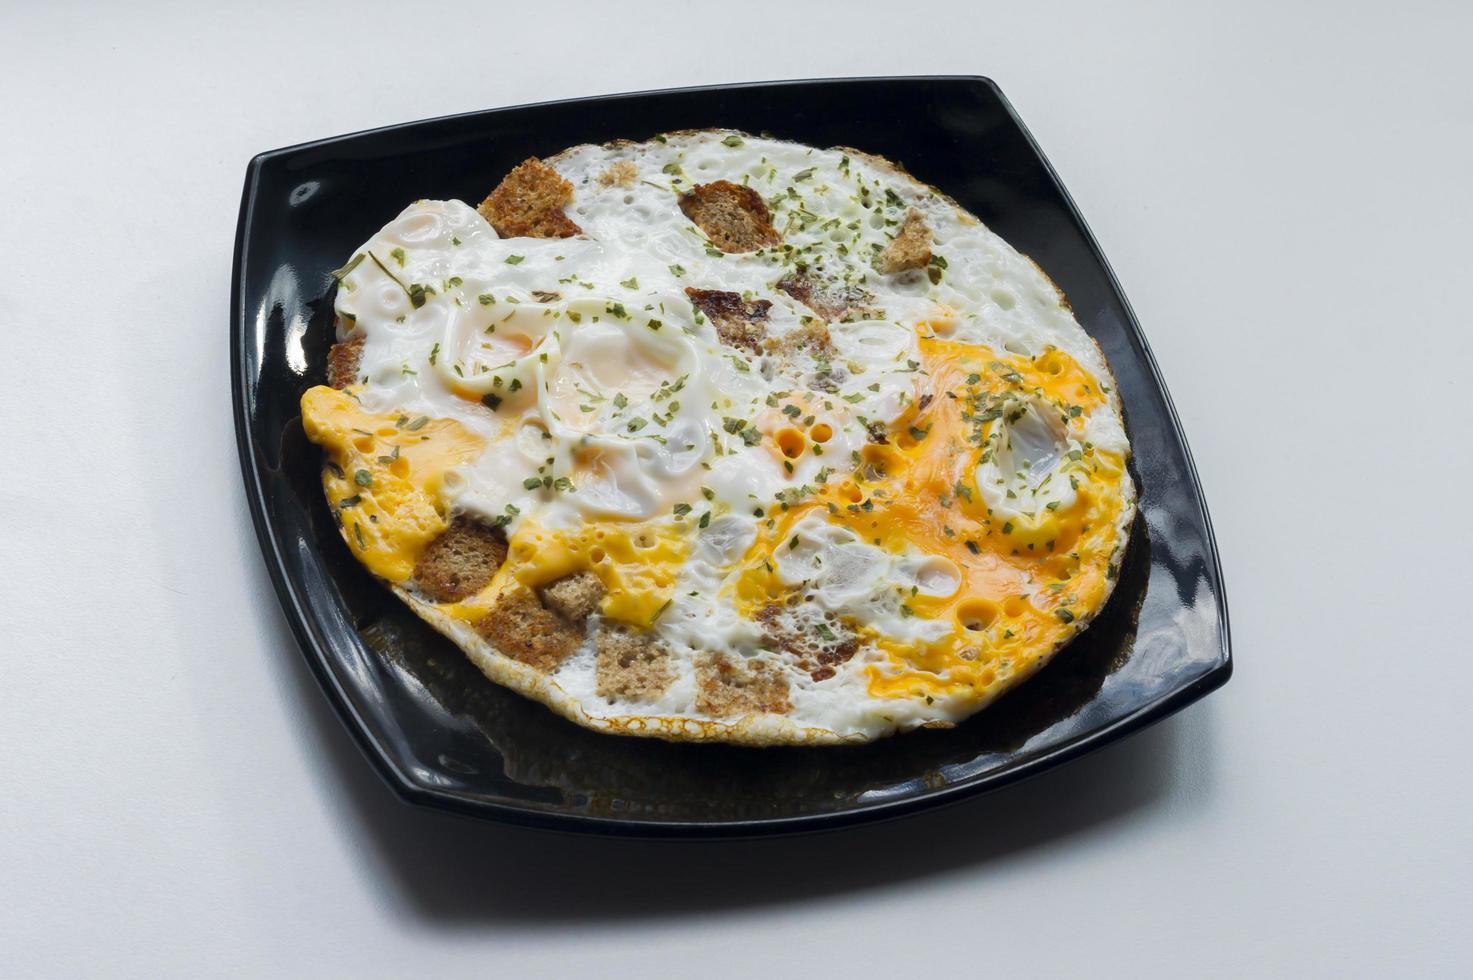 œufs au plat avec toasts et persil haché photo